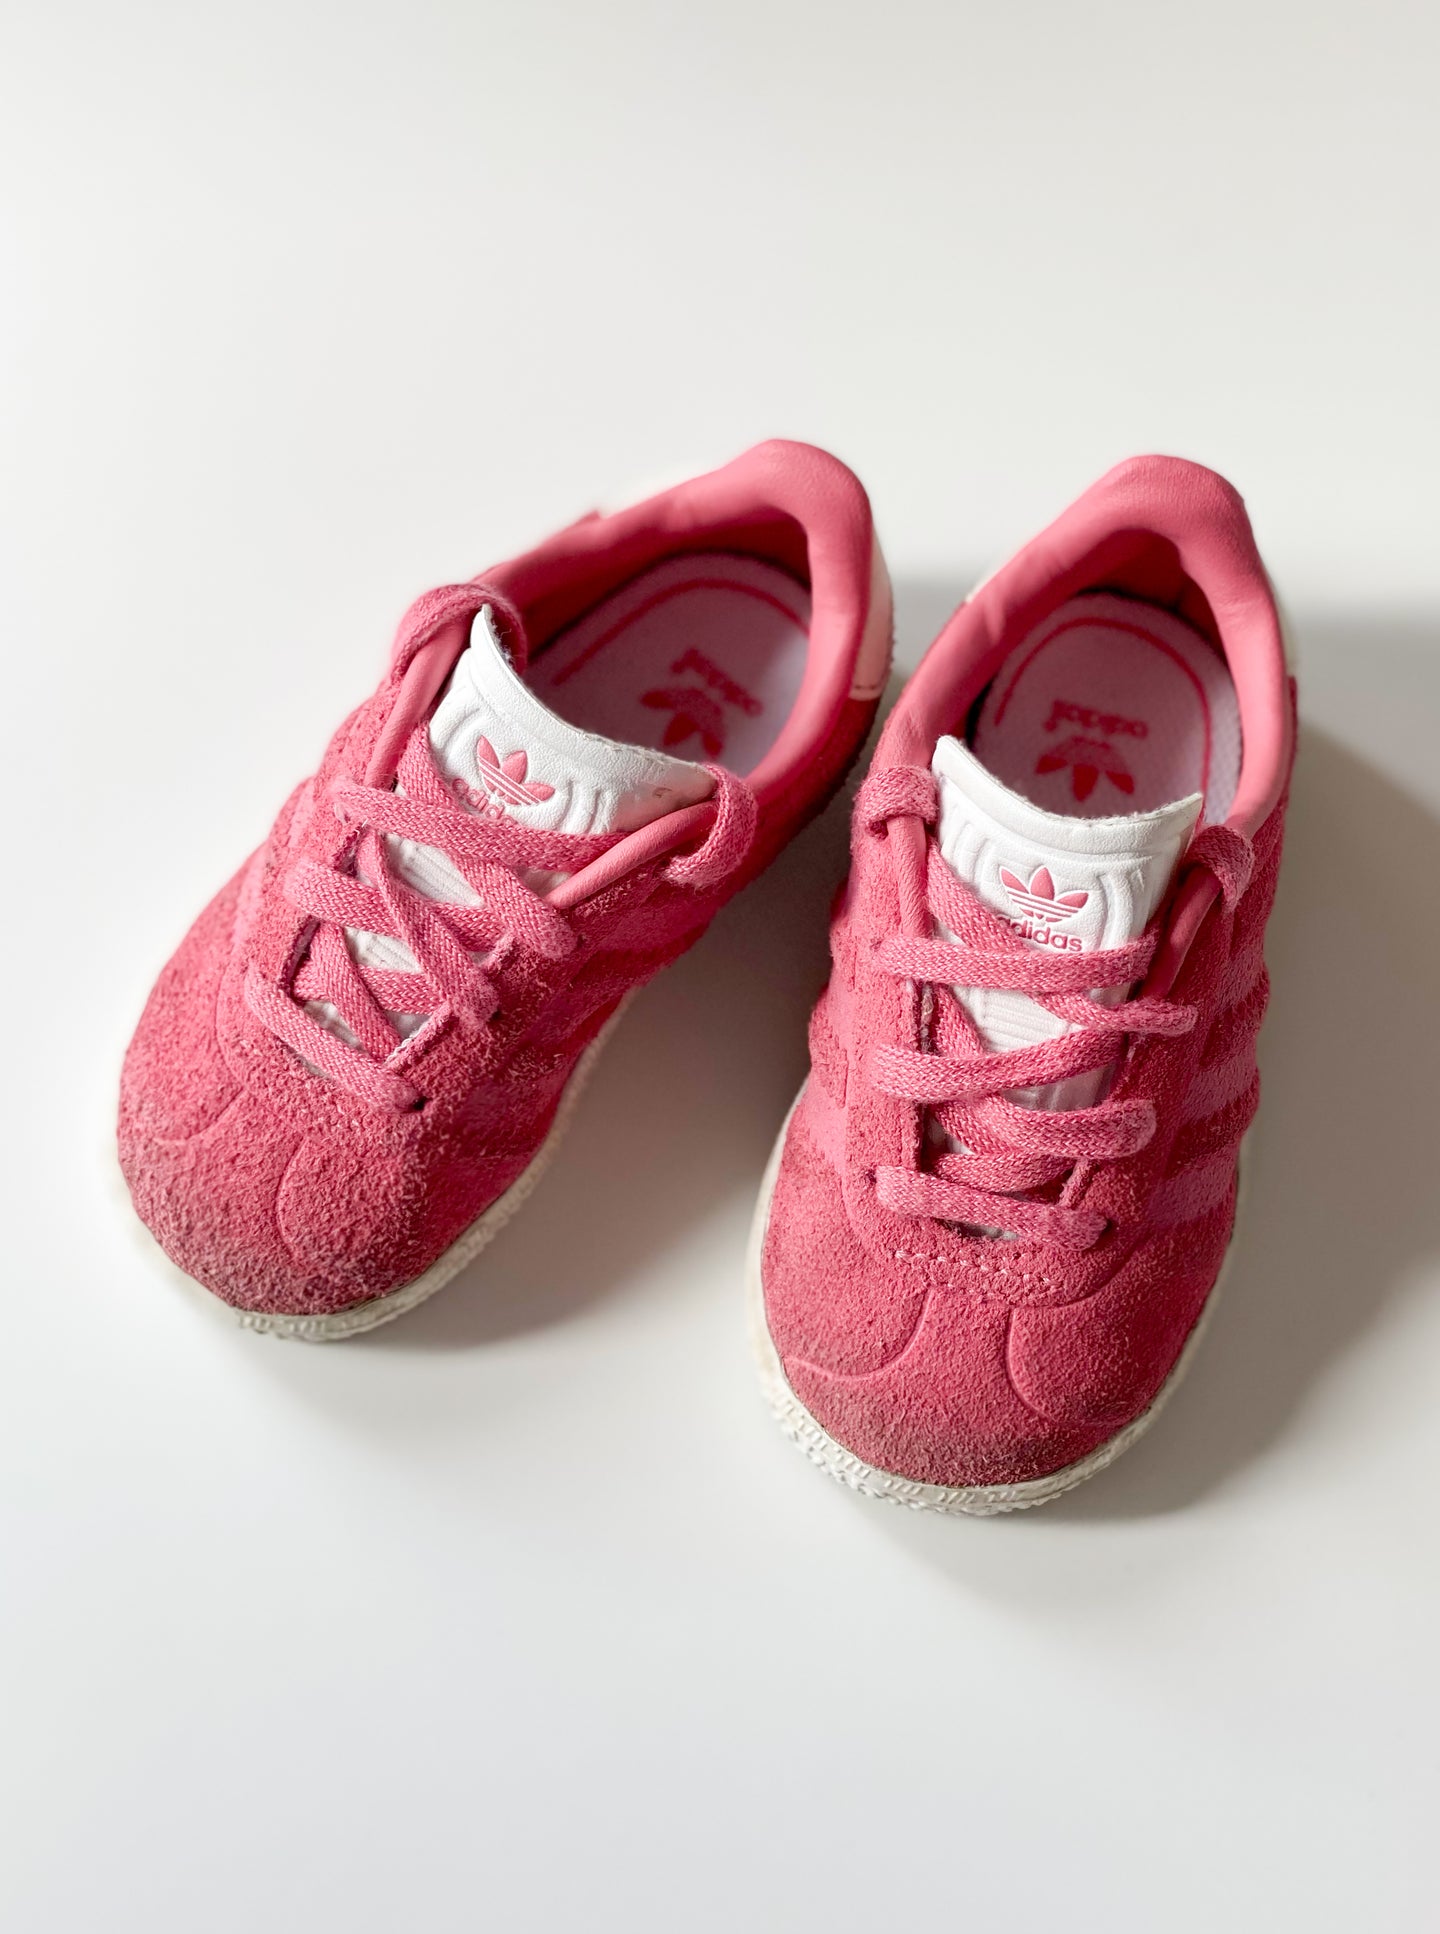 [US5] Adidas Gazelle Baby Originals Shoes Chalk Pink/Chalk Pink/Ftwr White